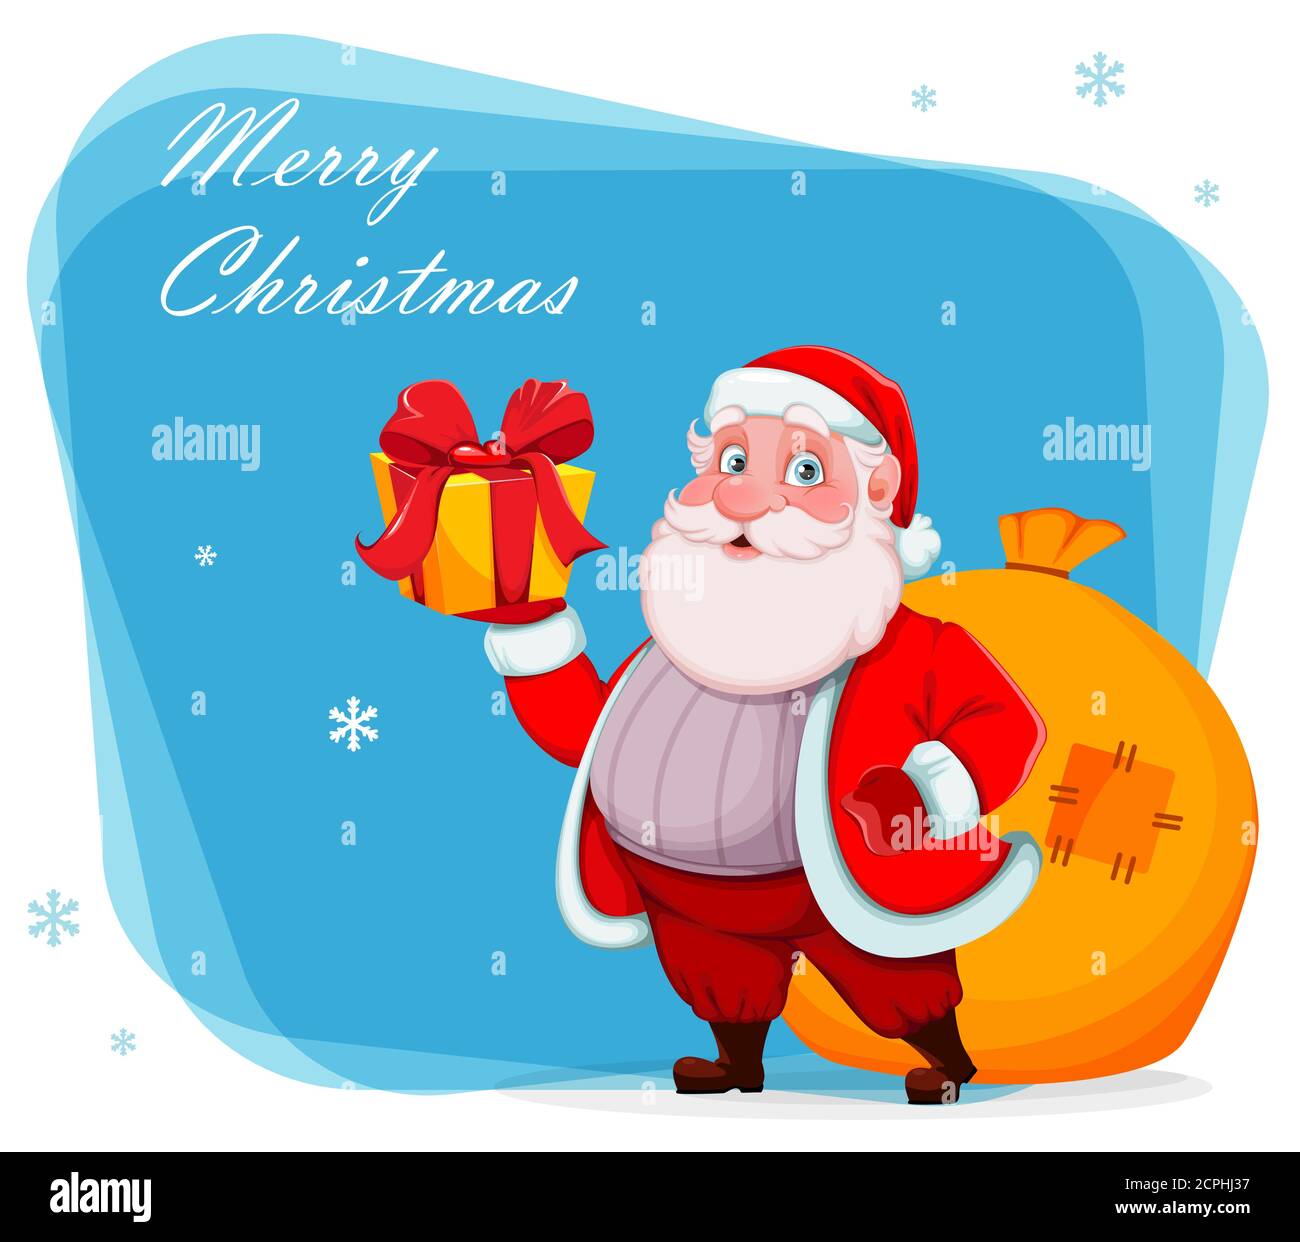 Frohe Weihnachten und ein glückliches neues Jahr Grußkarte. Fröhlicher Weihnachtsmann hält Geschenkbox und Sack mit Geschenken. Vektorgrafik Stock Vektor